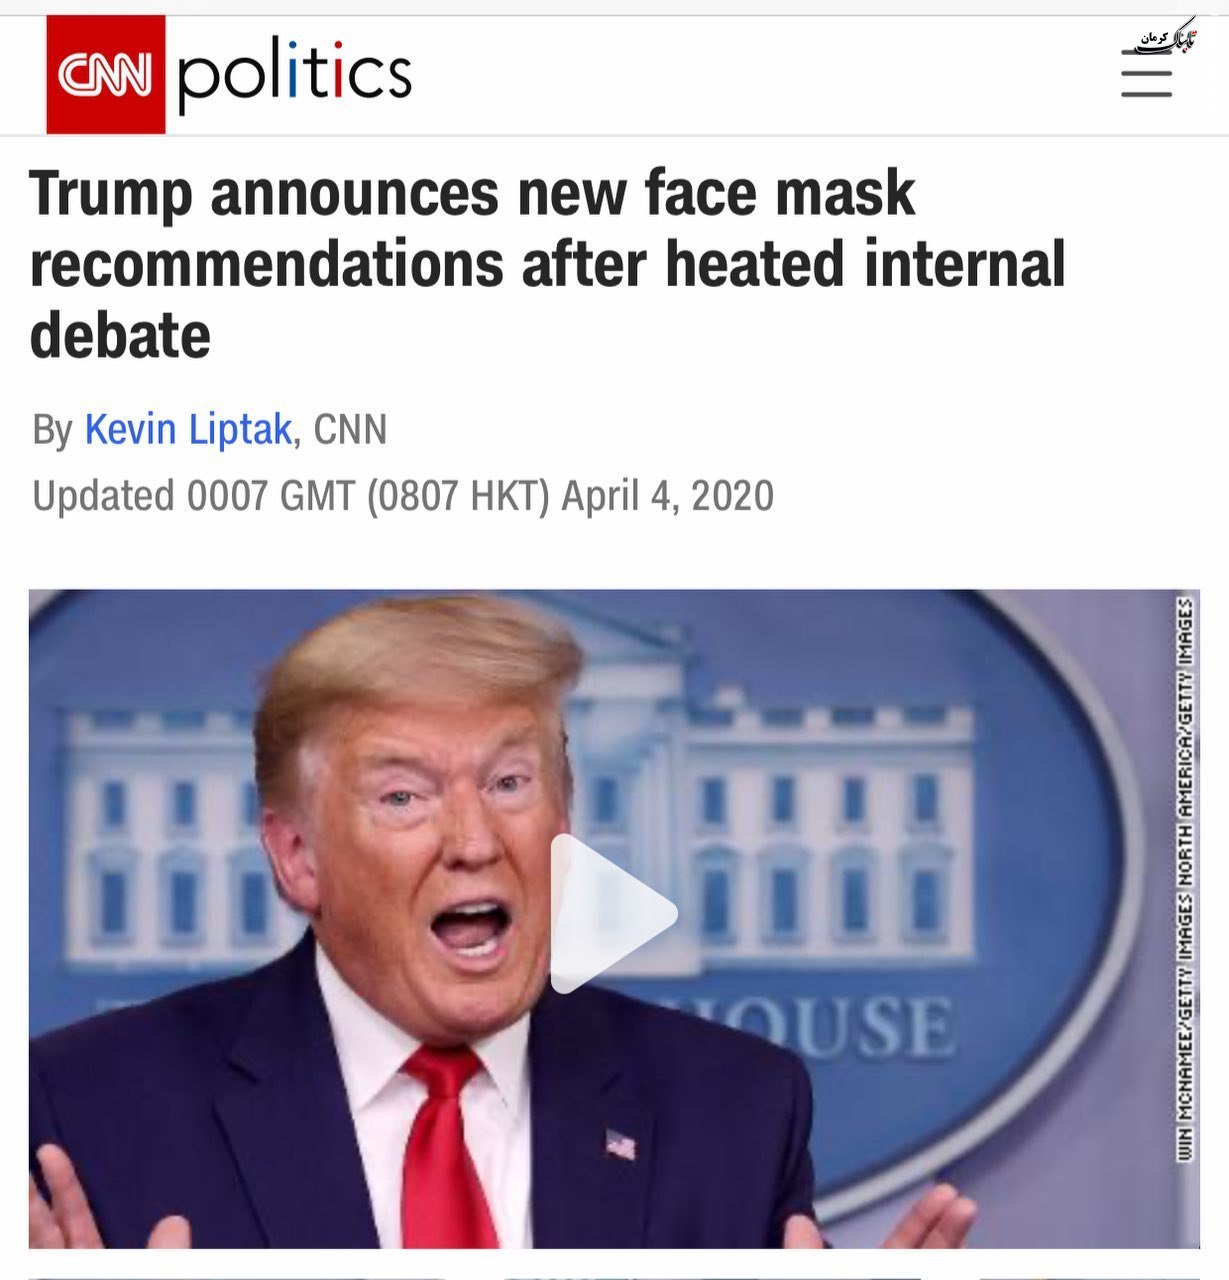 رییس جمهور آمریکا به مردم توصیه کرد ماسک بزنند